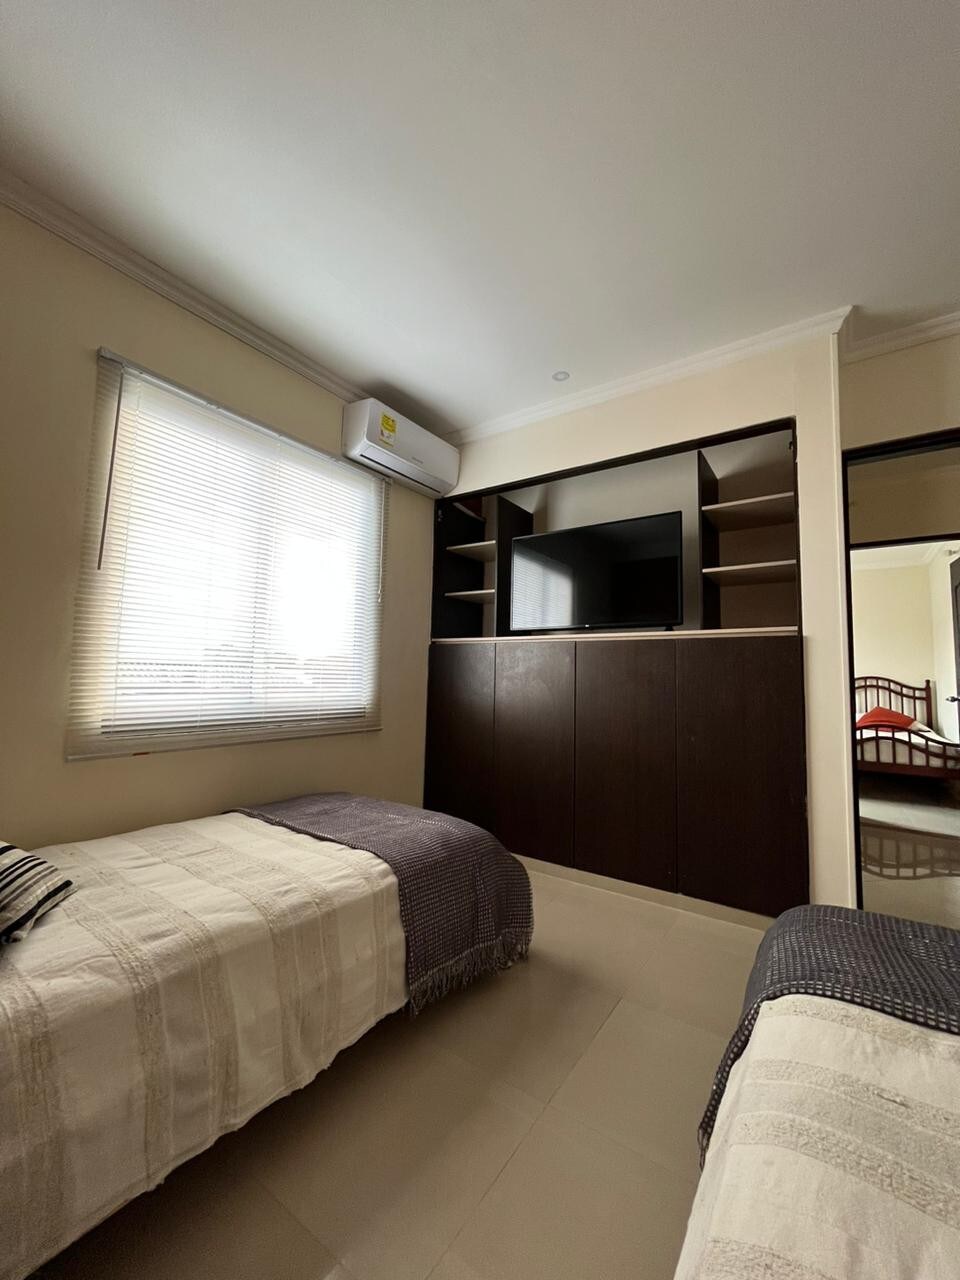 Habitación con 2 camas sencillas en Jamundí (1)